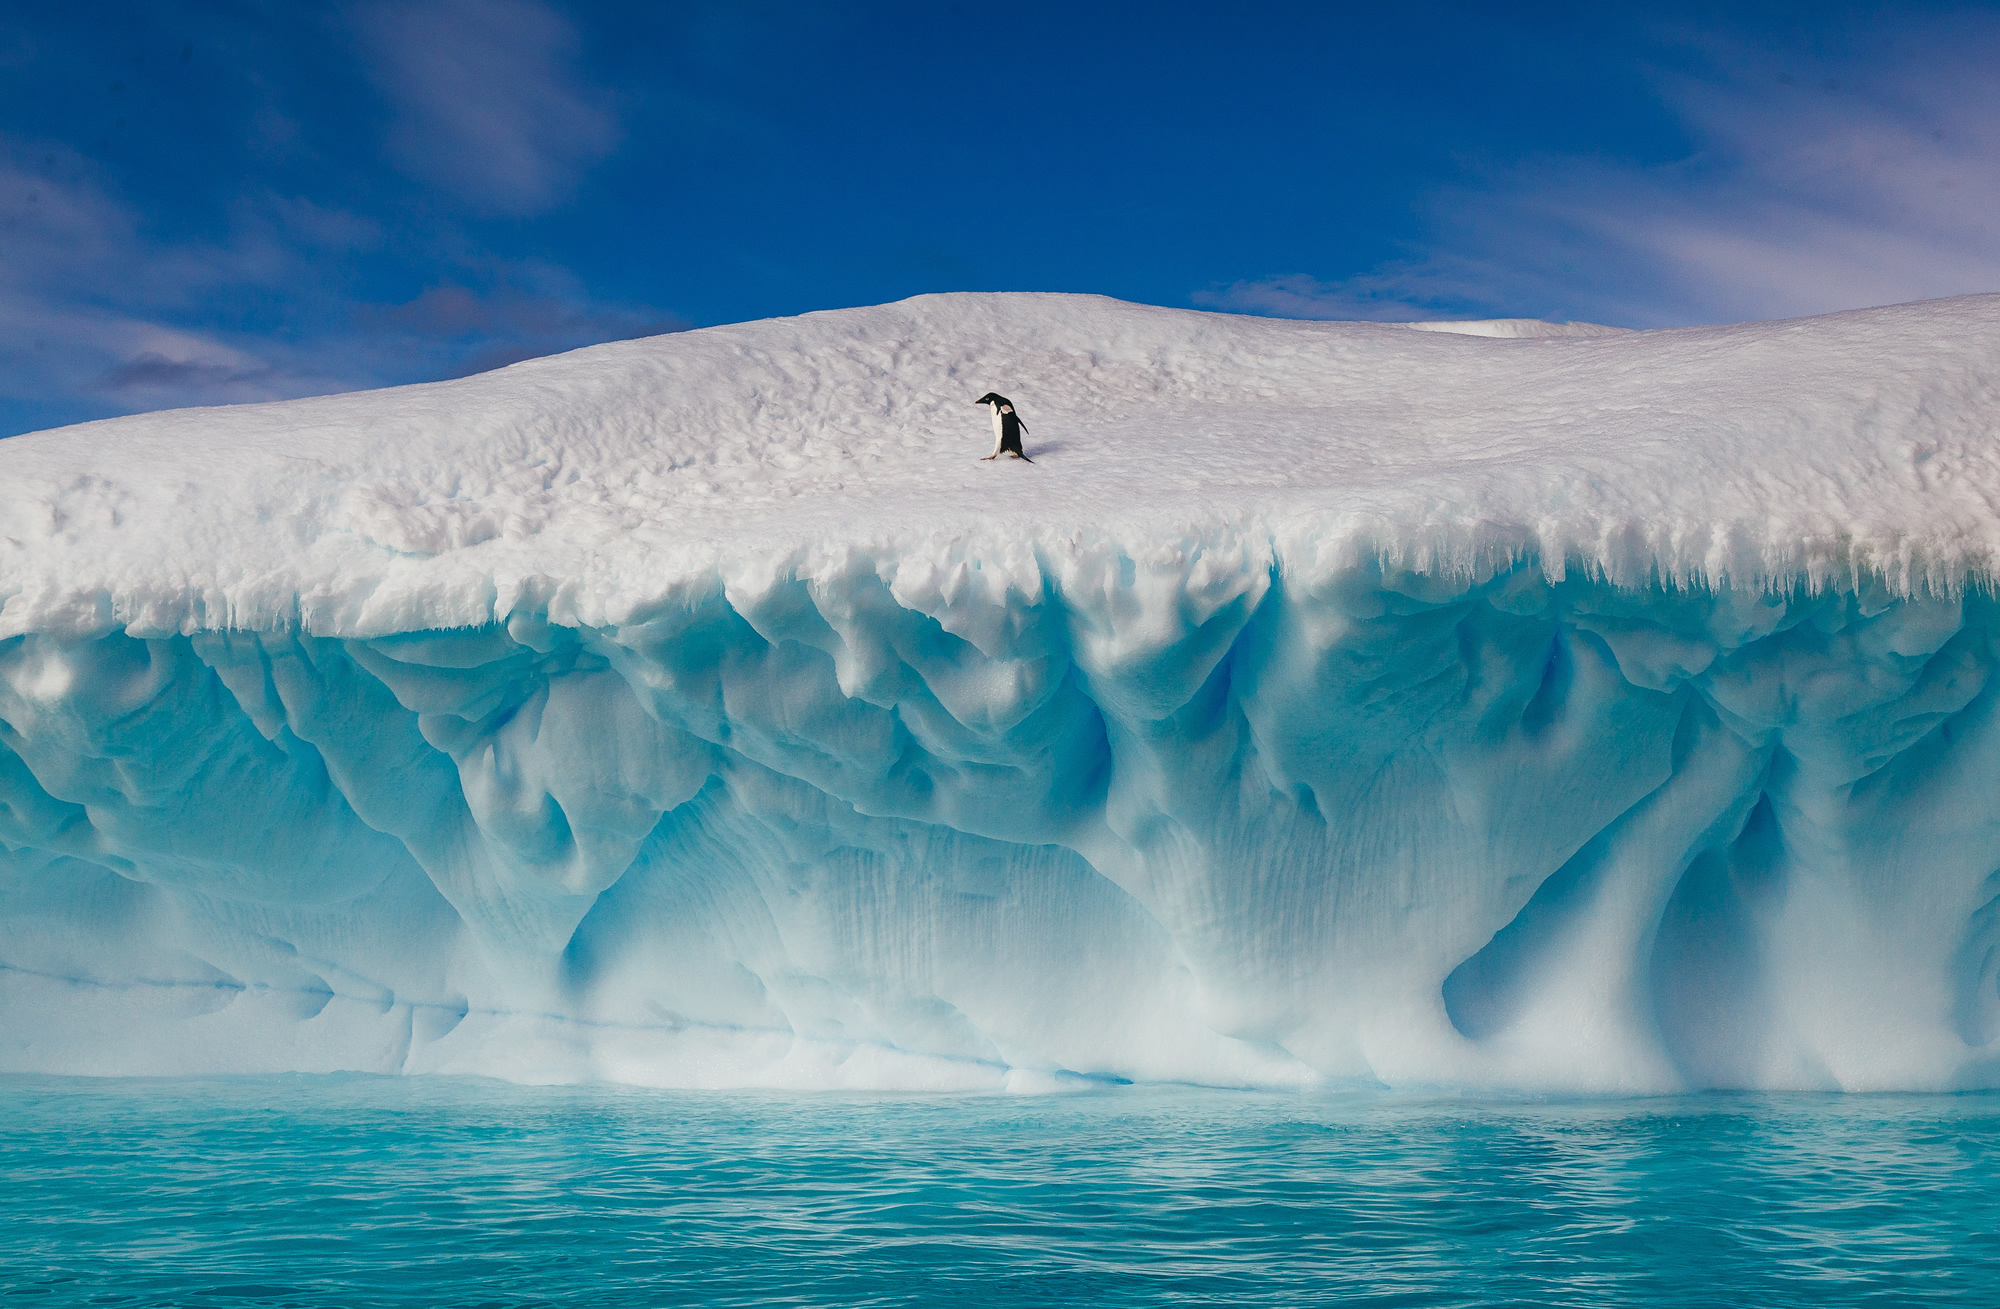 2017年3月31日讯,南极布朗断崖,一只在巨大冰山旁徘徊寻找同类的企鹅